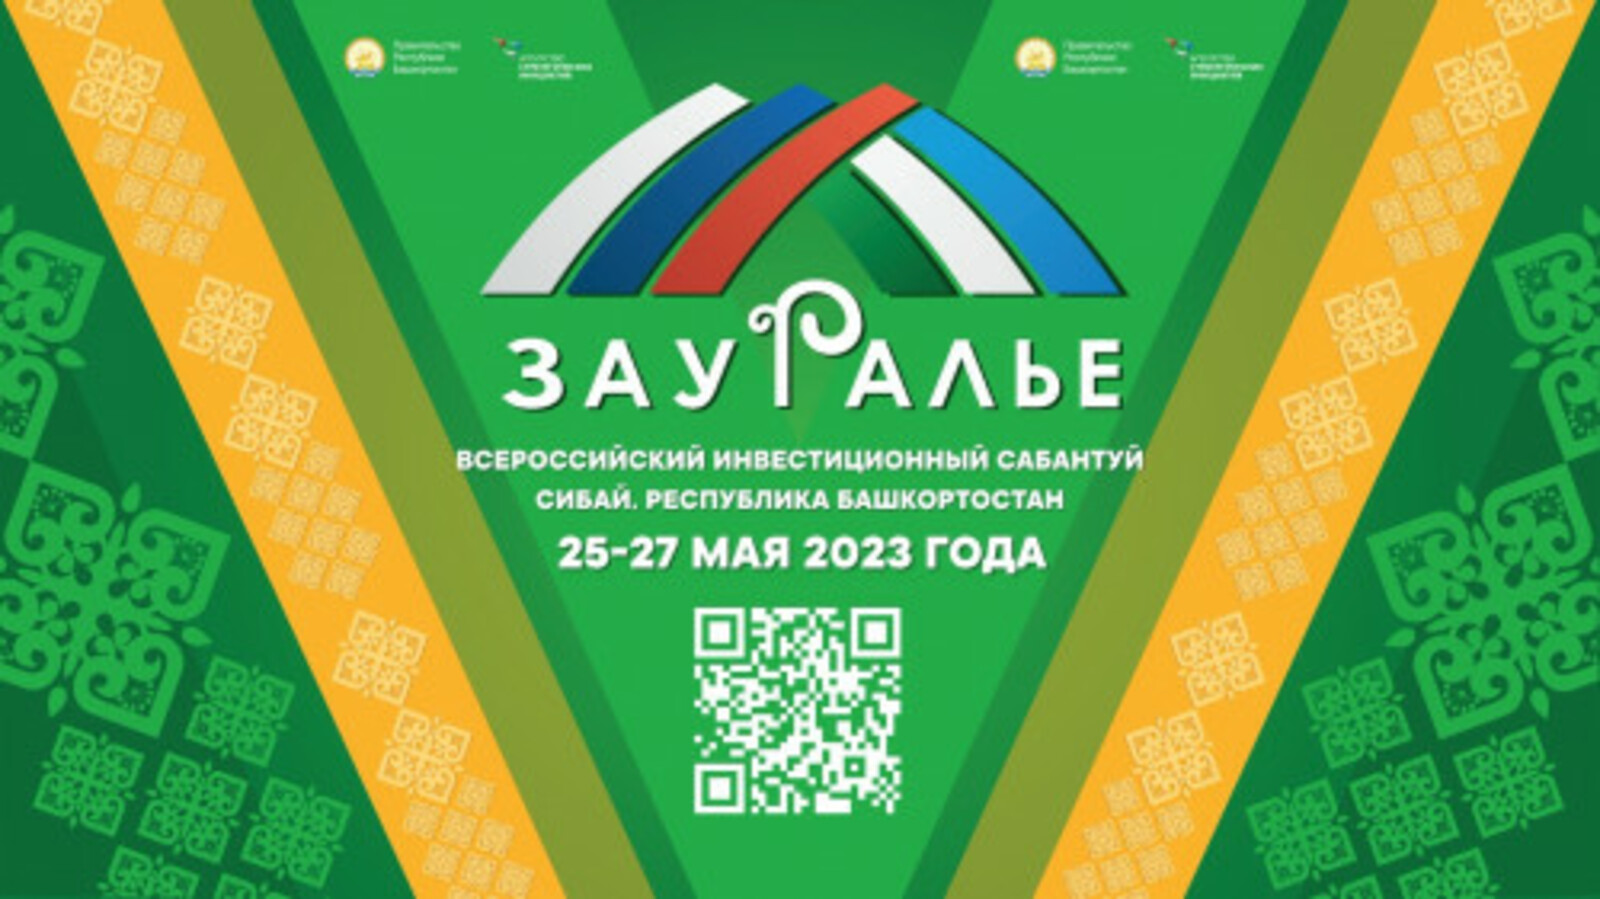 Всероссийский инвестиционный сабантуй «Зауралье» в г. Сибай состоится  25-27 мая